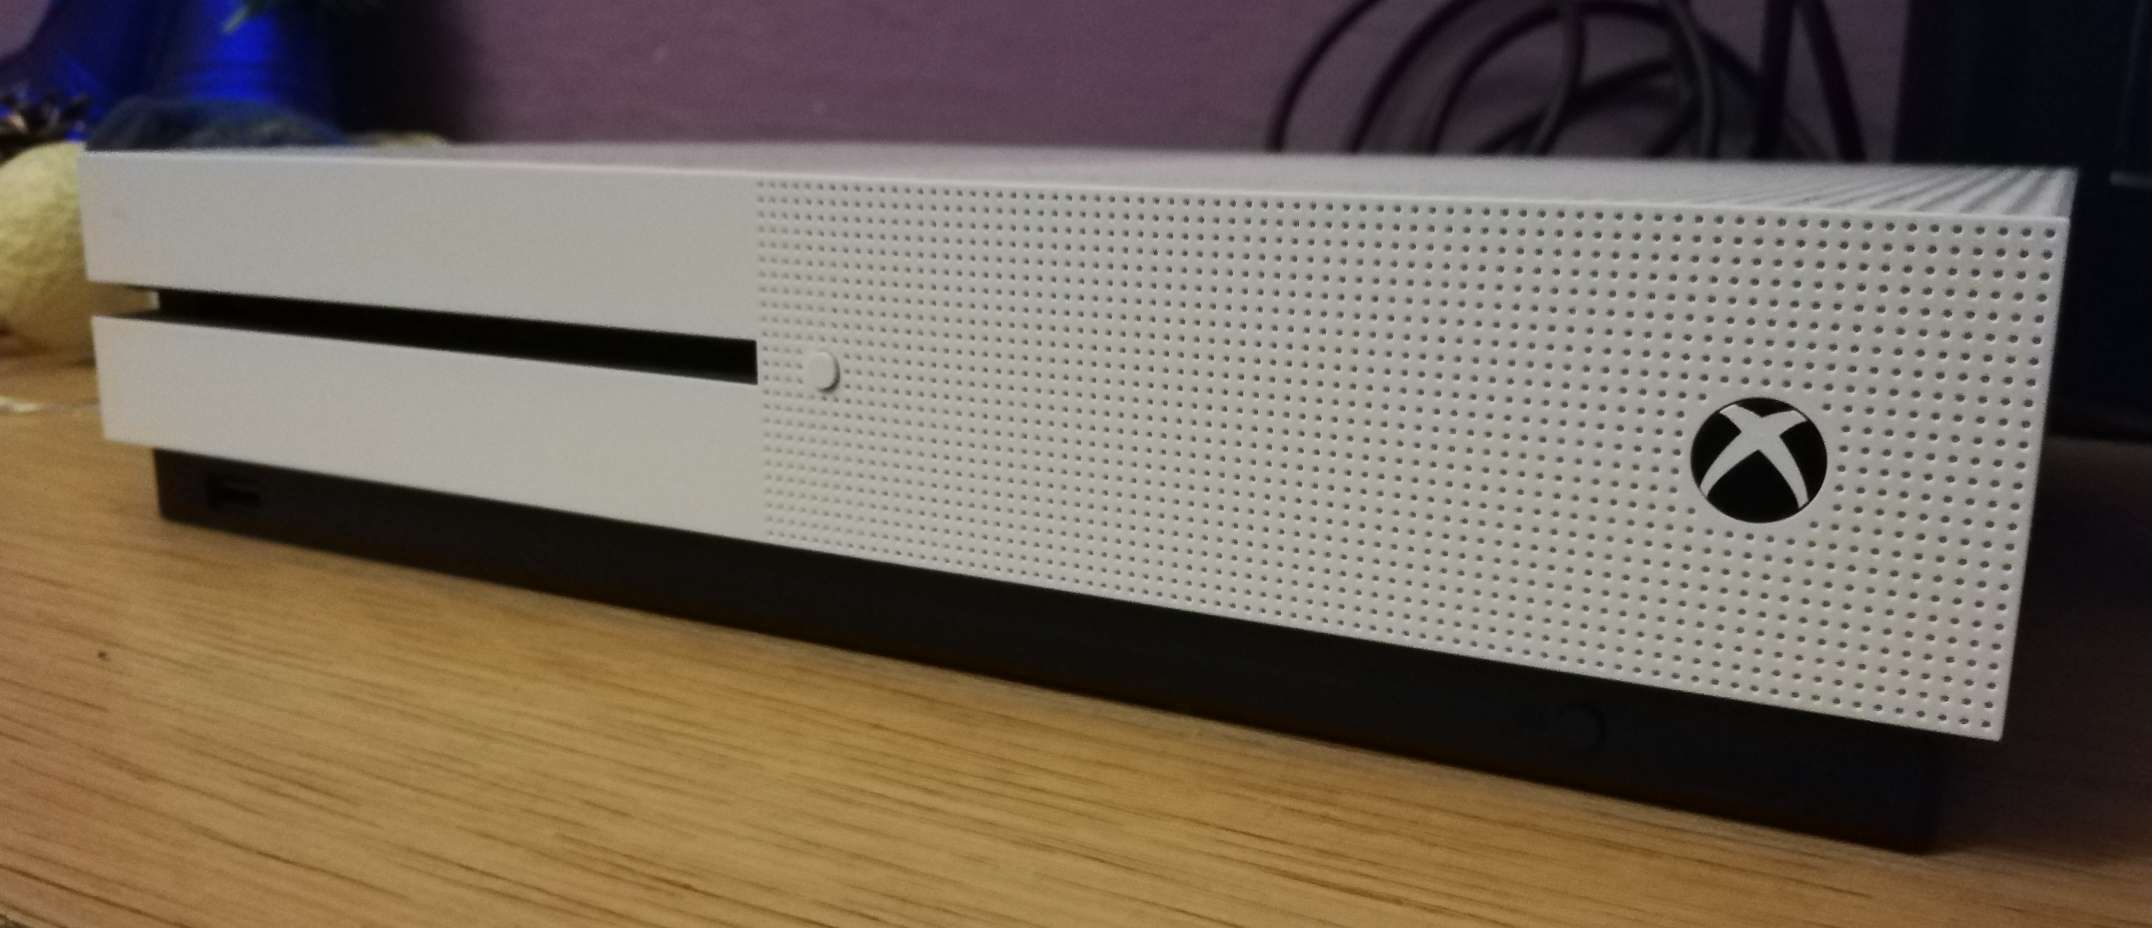 5 tygodni z Xboxem Slim, czyli pierwsze wrażenia po zakupie białego pudełka